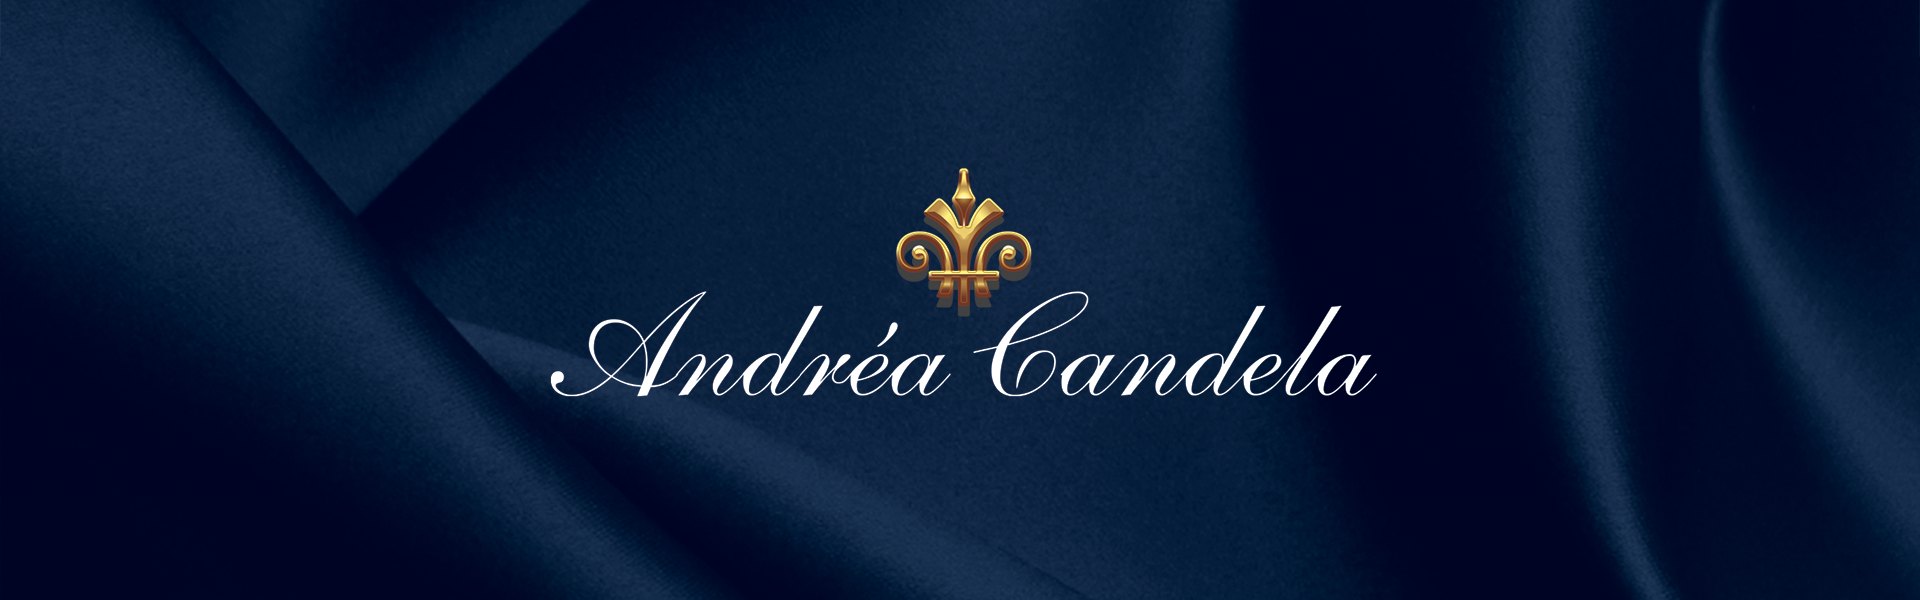 Andrea Candela